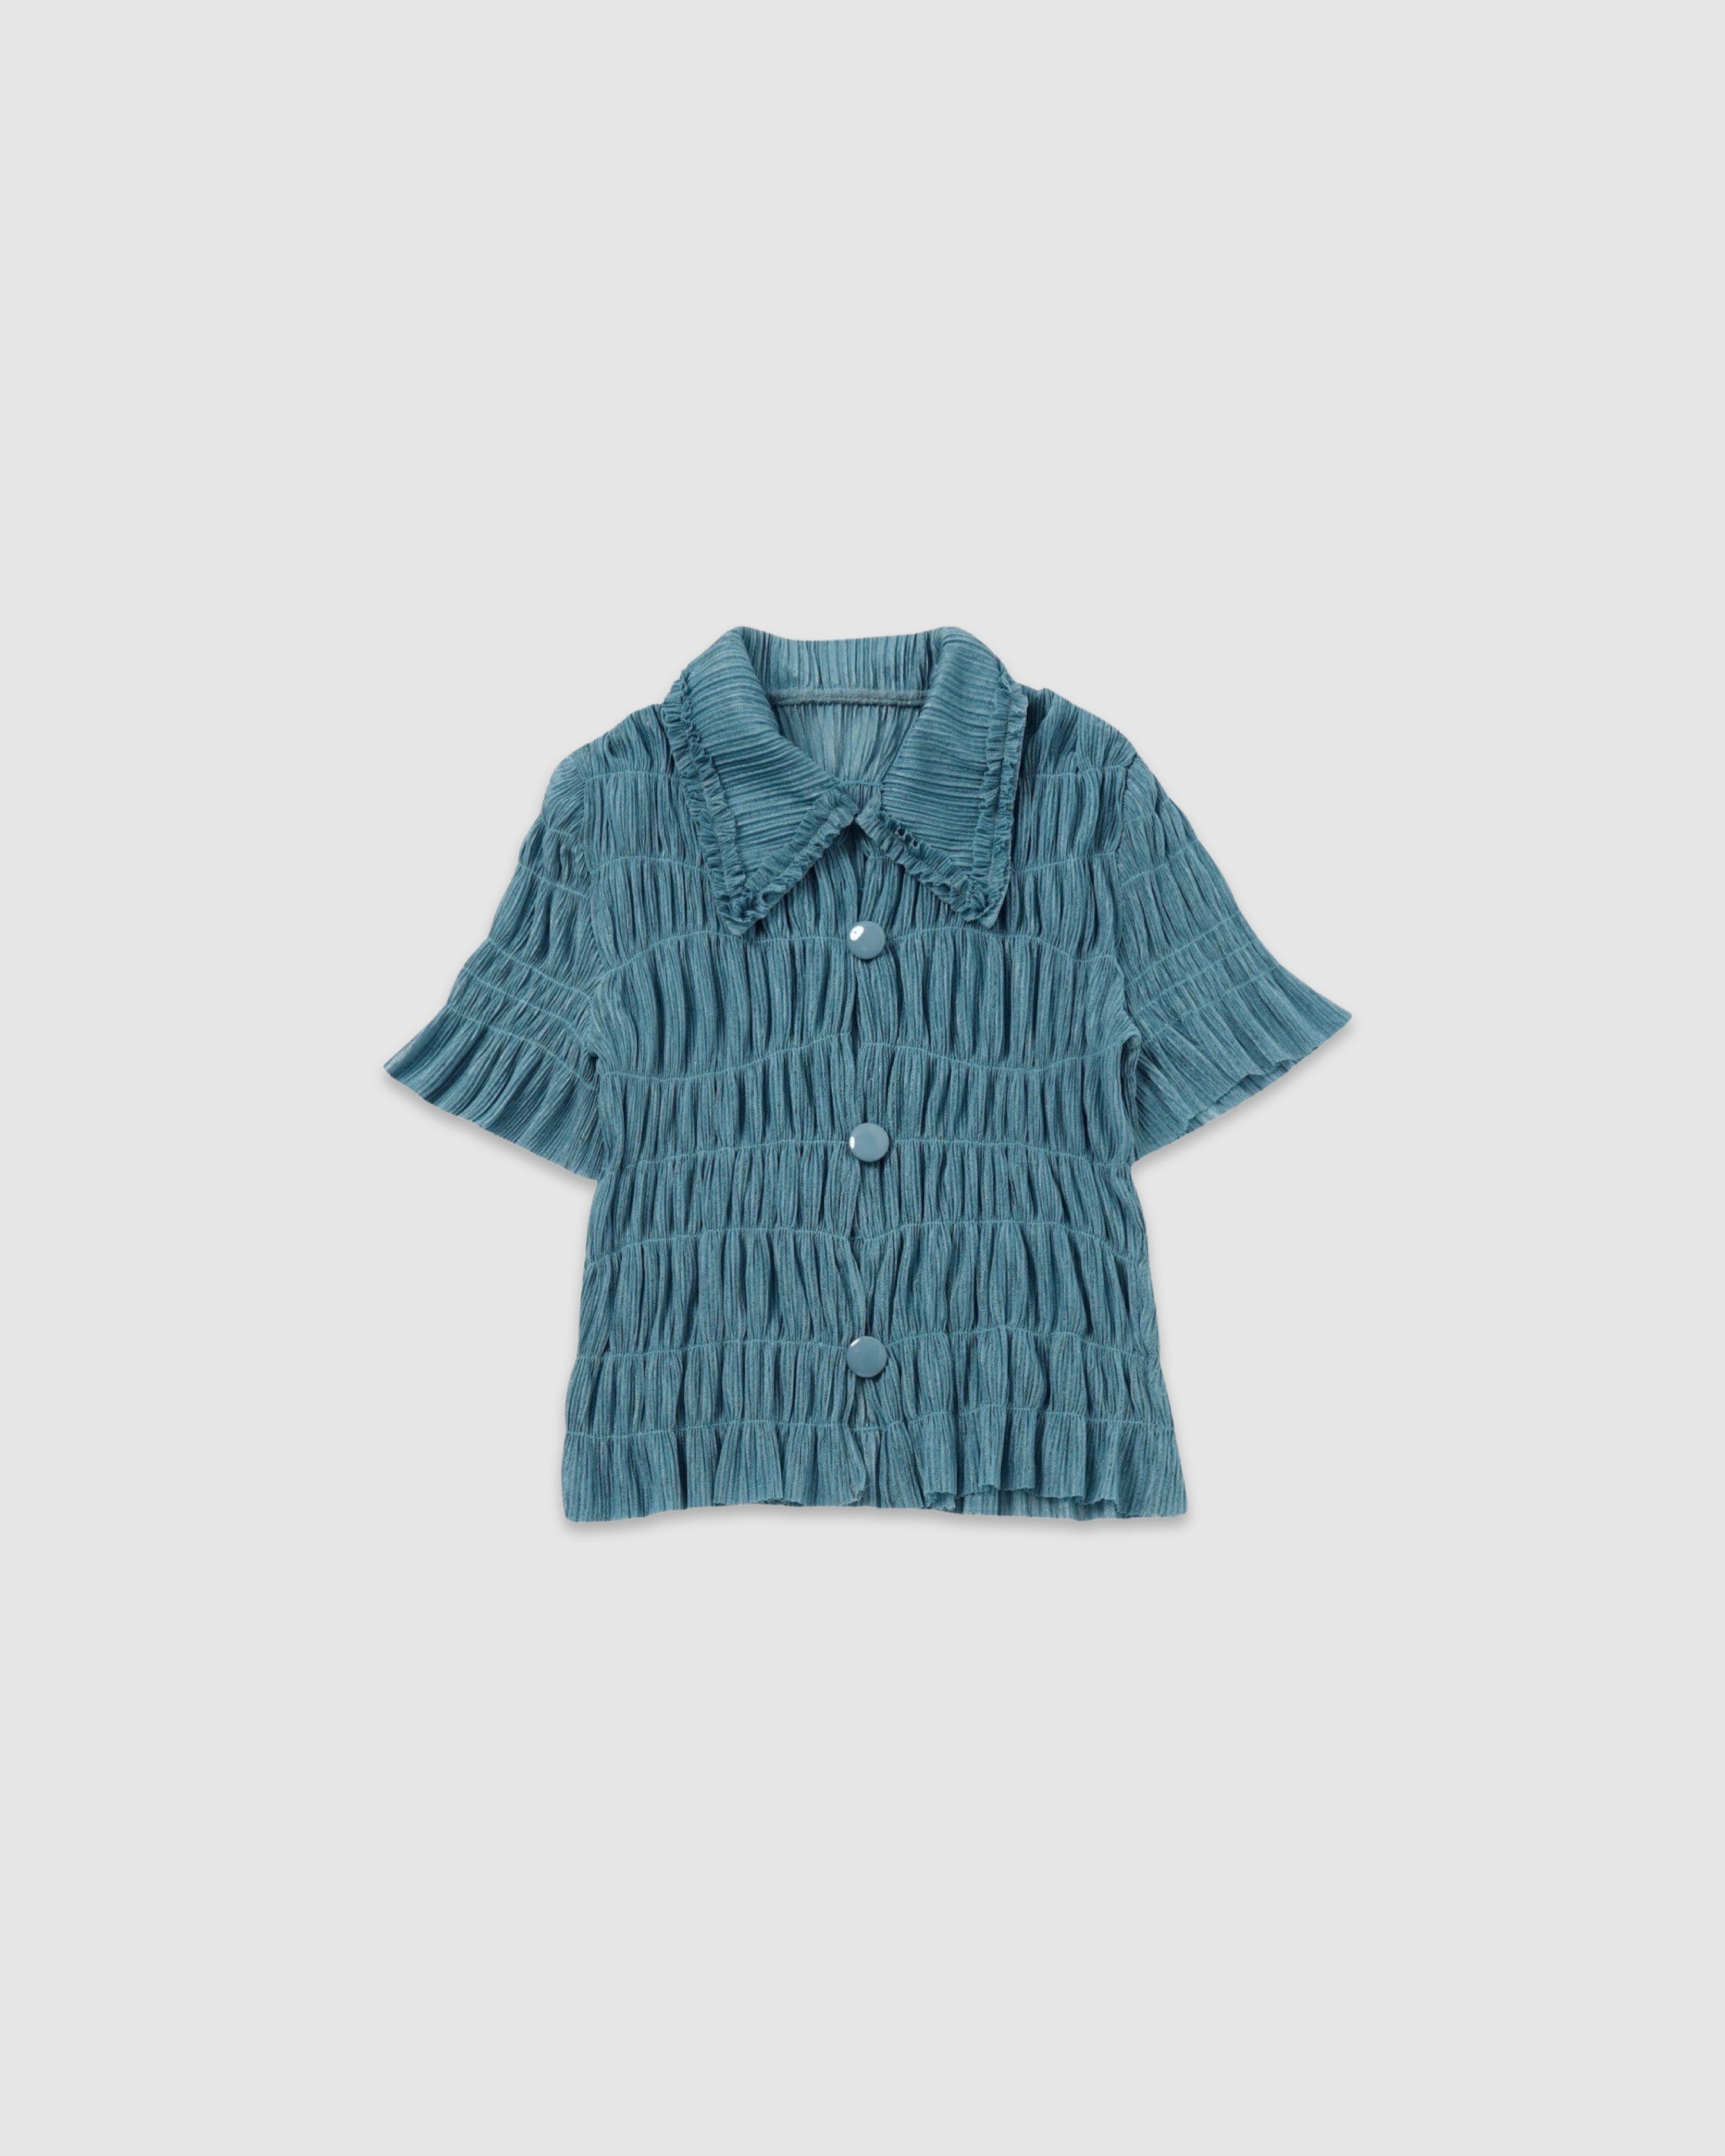 Shirring sheer shirt (turquoise)